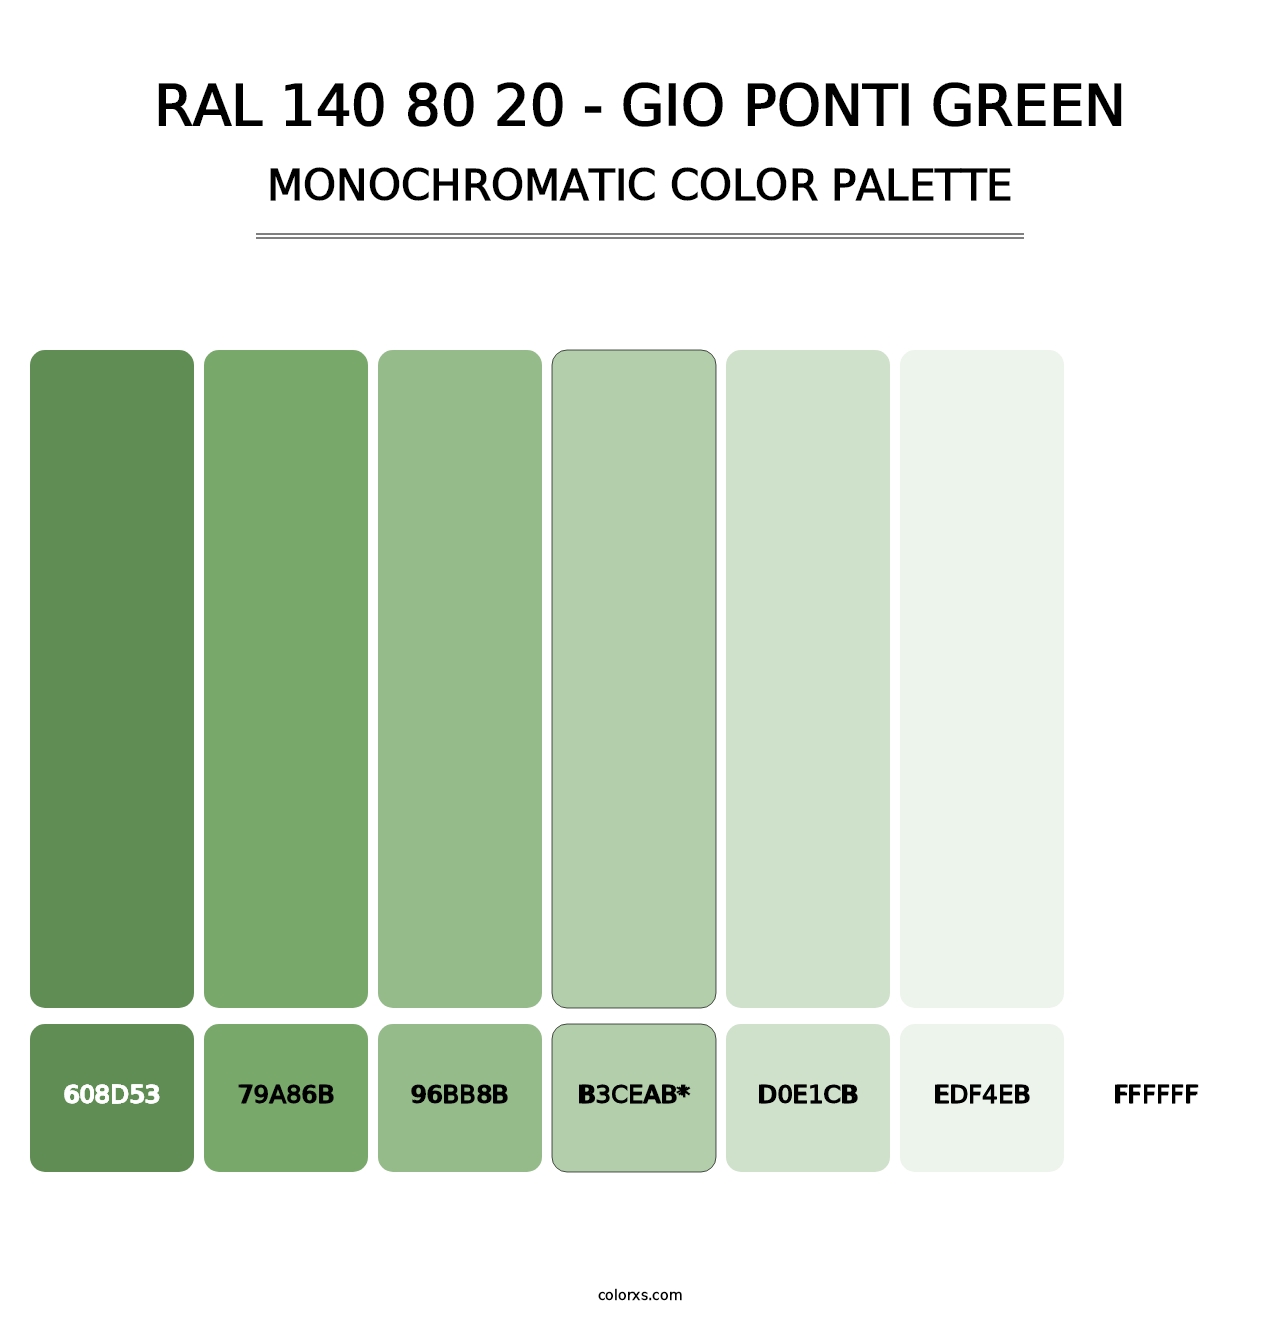 RAL 140 80 20 - Gio Ponti Green - Monochromatic Color Palette